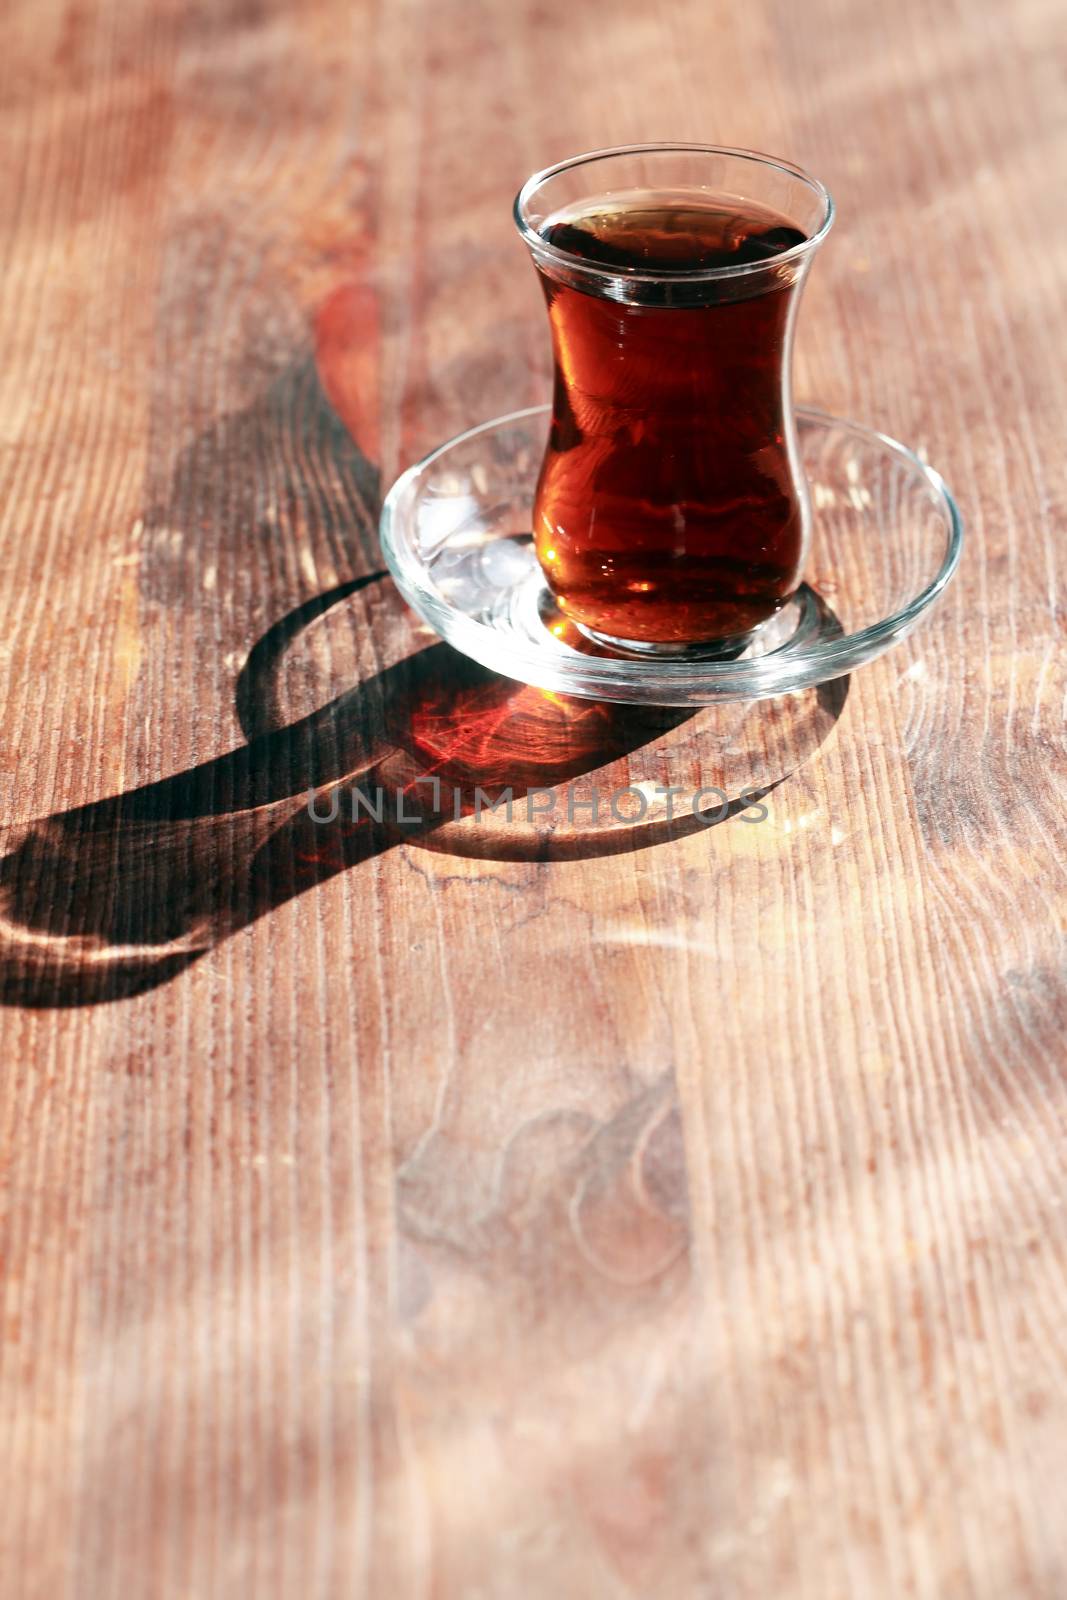 Cup of Turkish tea on wooden table under sunlight